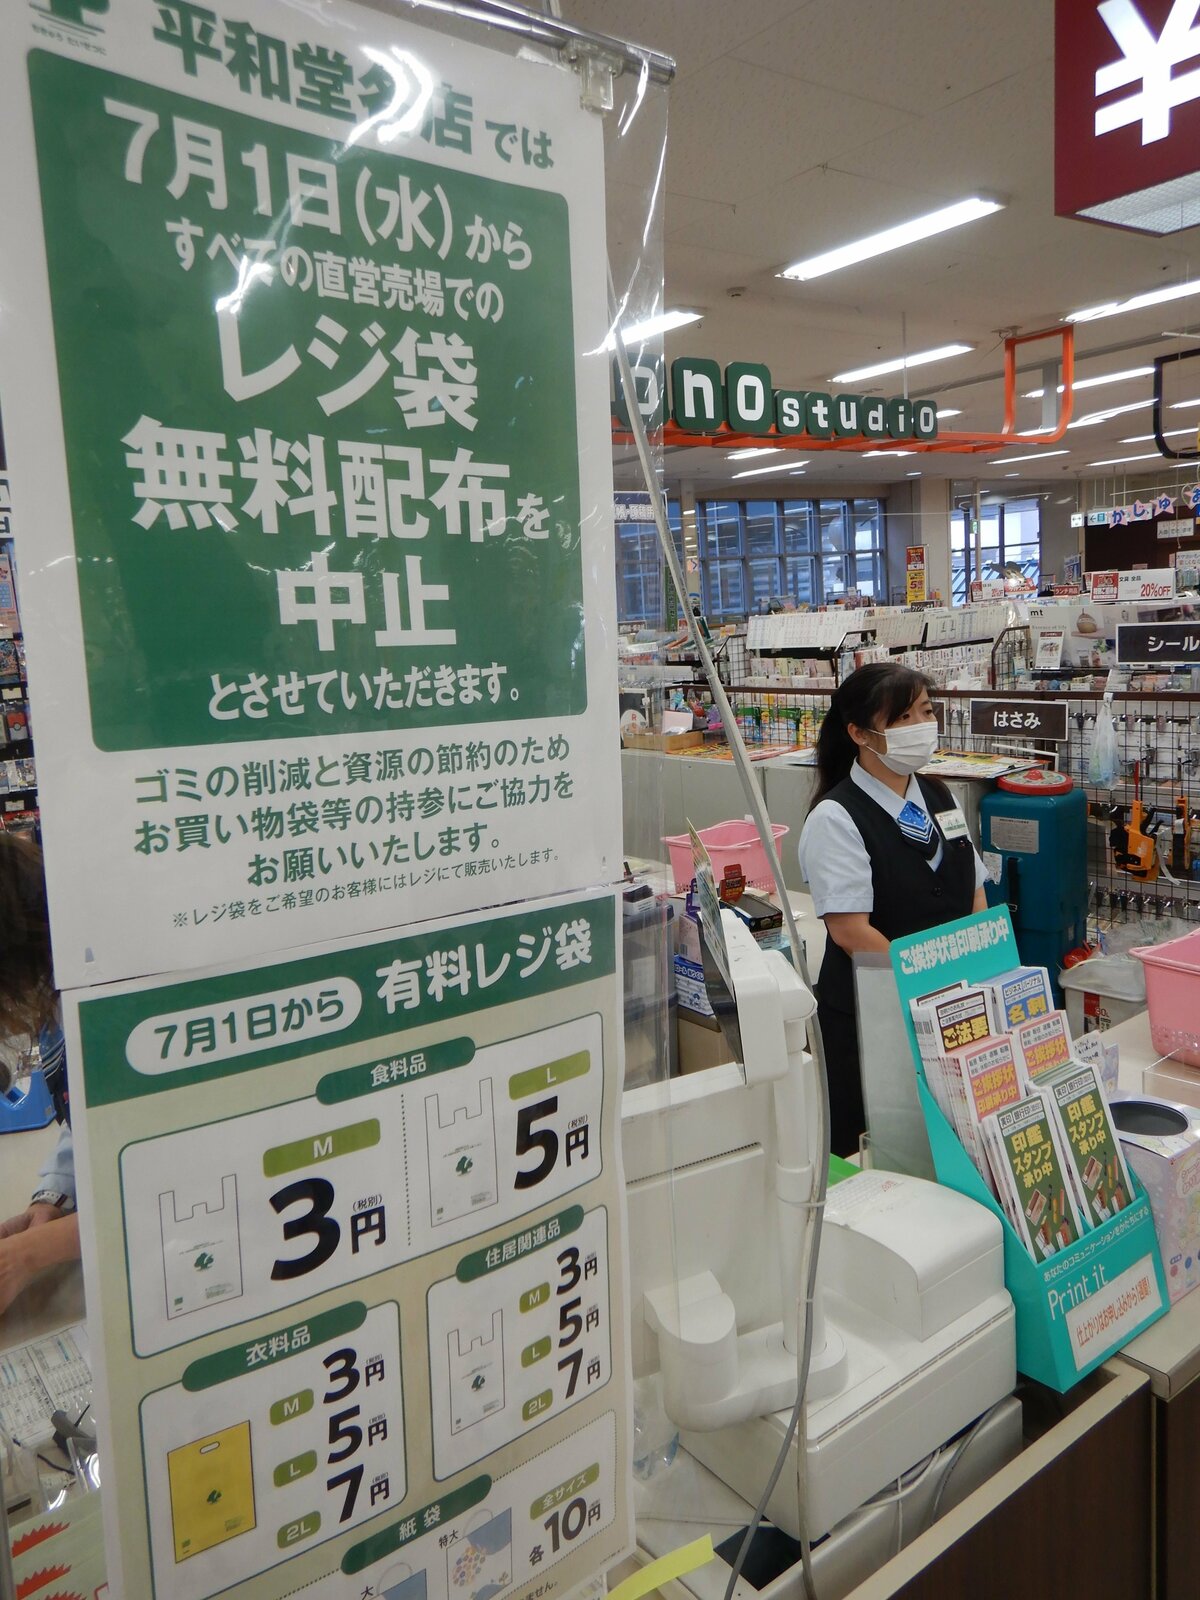 エコか抜け道か 無料のバイオマスレジ袋 テークアウト伸び導入相次ぐ レジ袋有料化の対象外 社会 地域のニュース 京都新聞